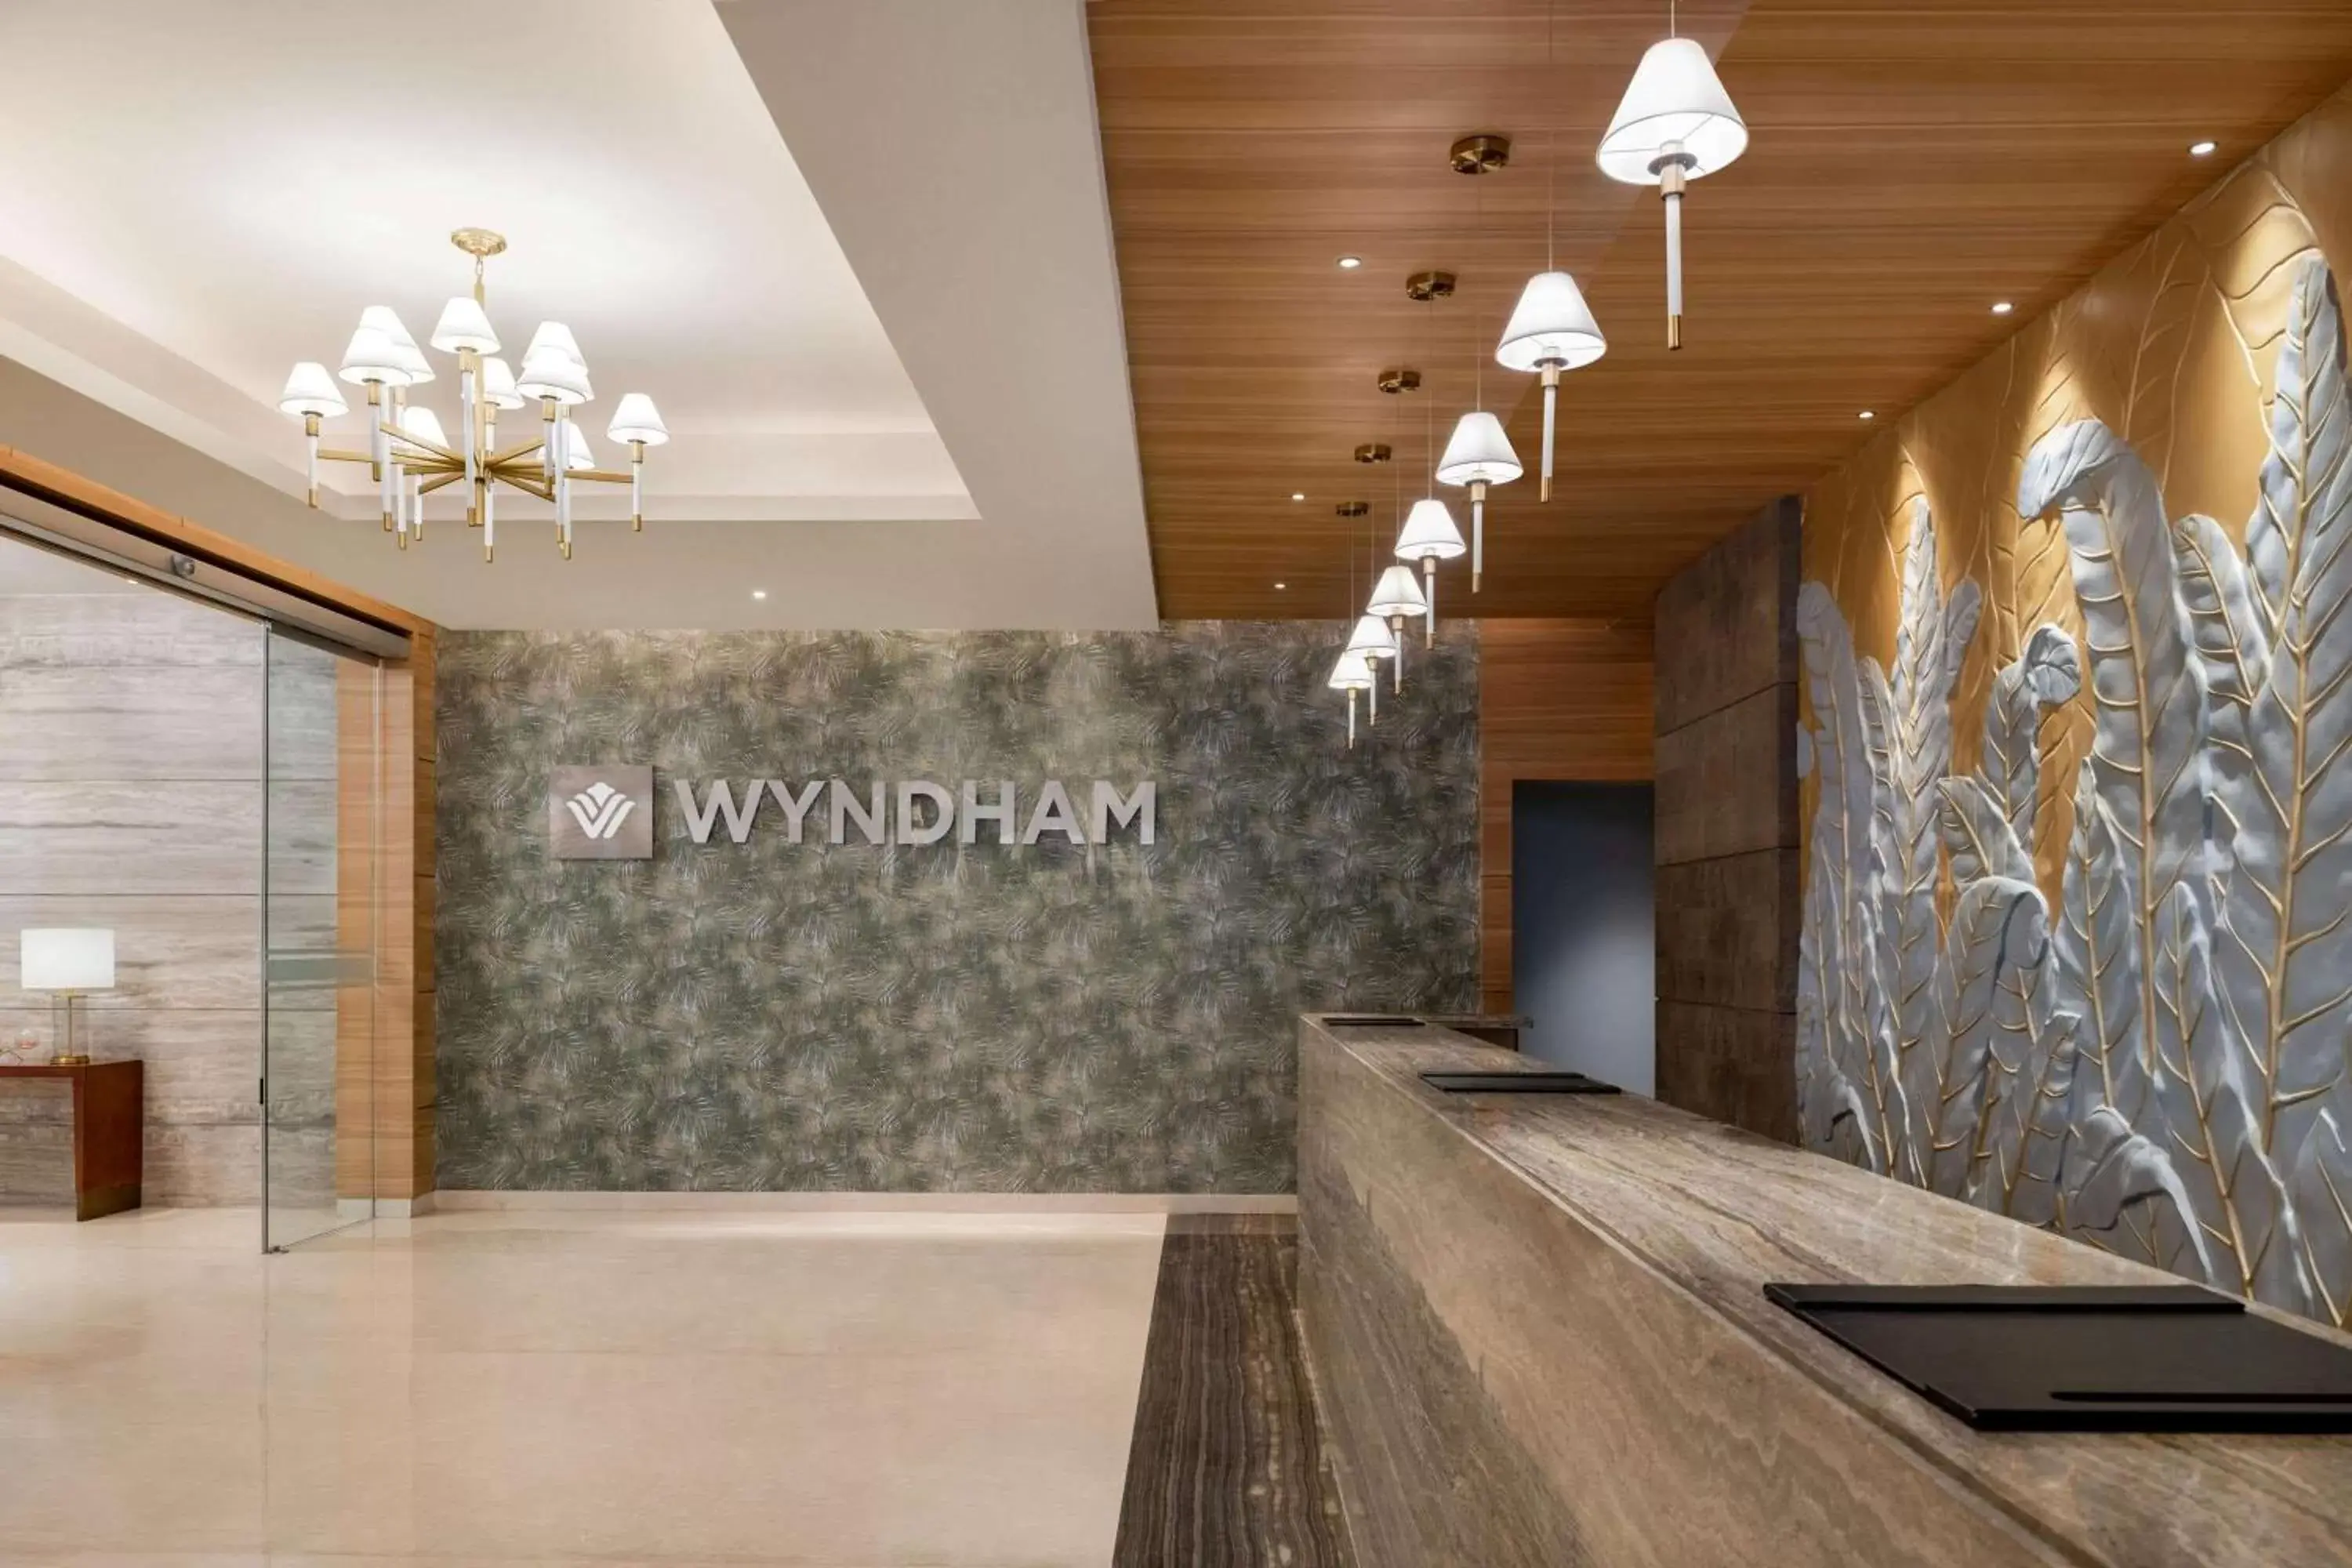 Lobby or reception, Lobby/Reception in Wyndham Chandigarh Mohali